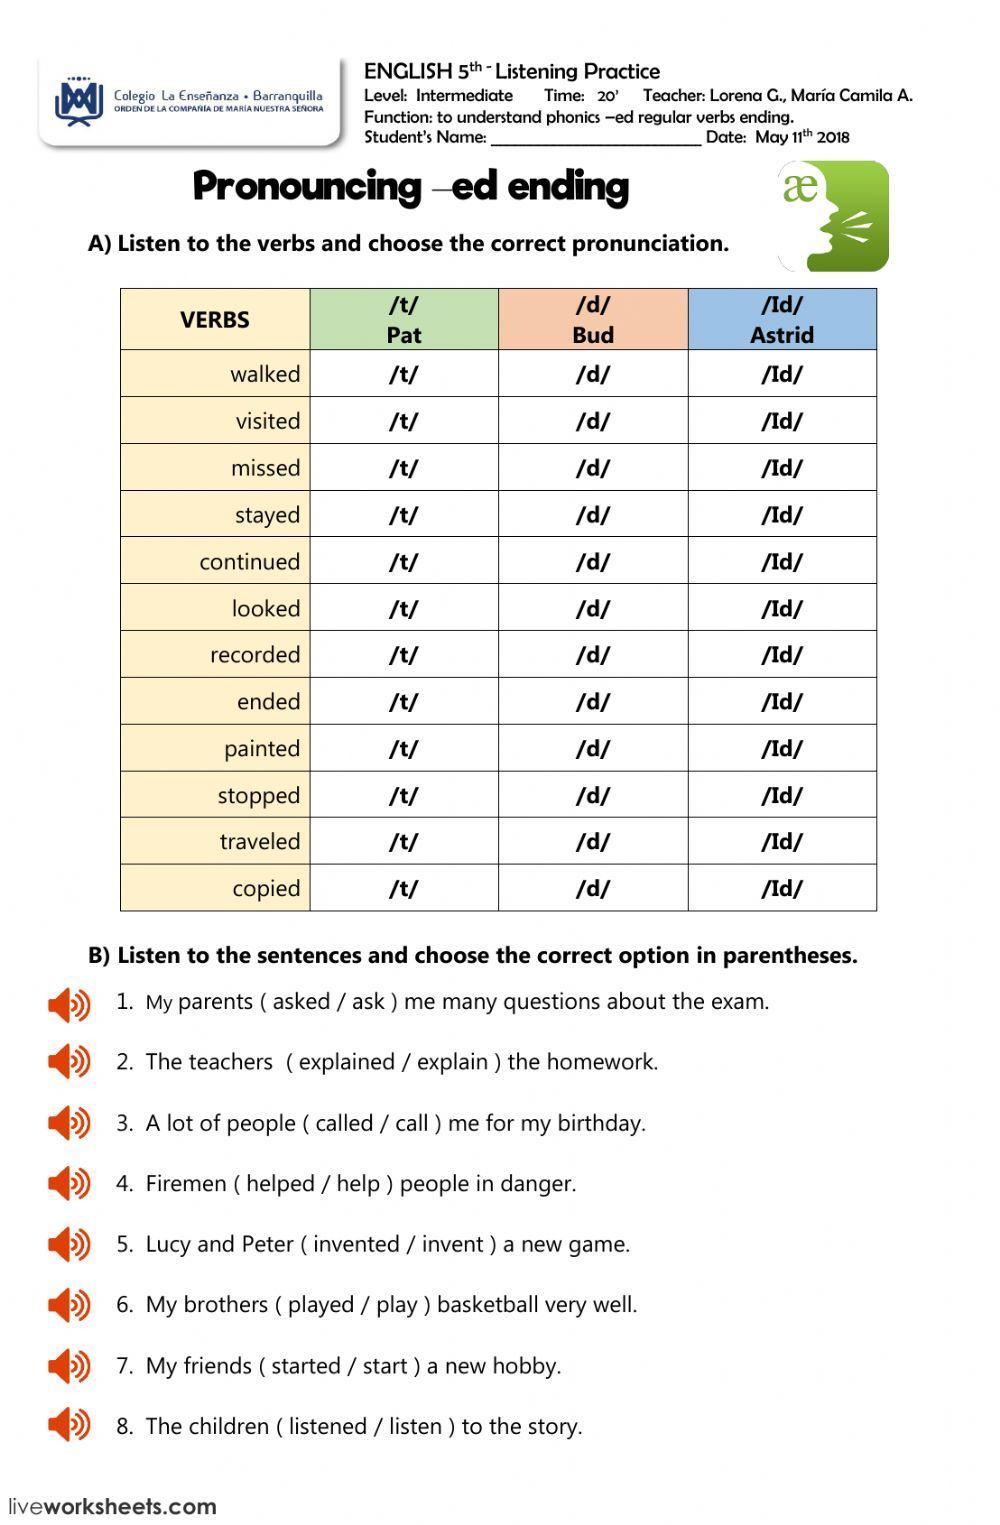 Pronunciation regular verbs -ed ending